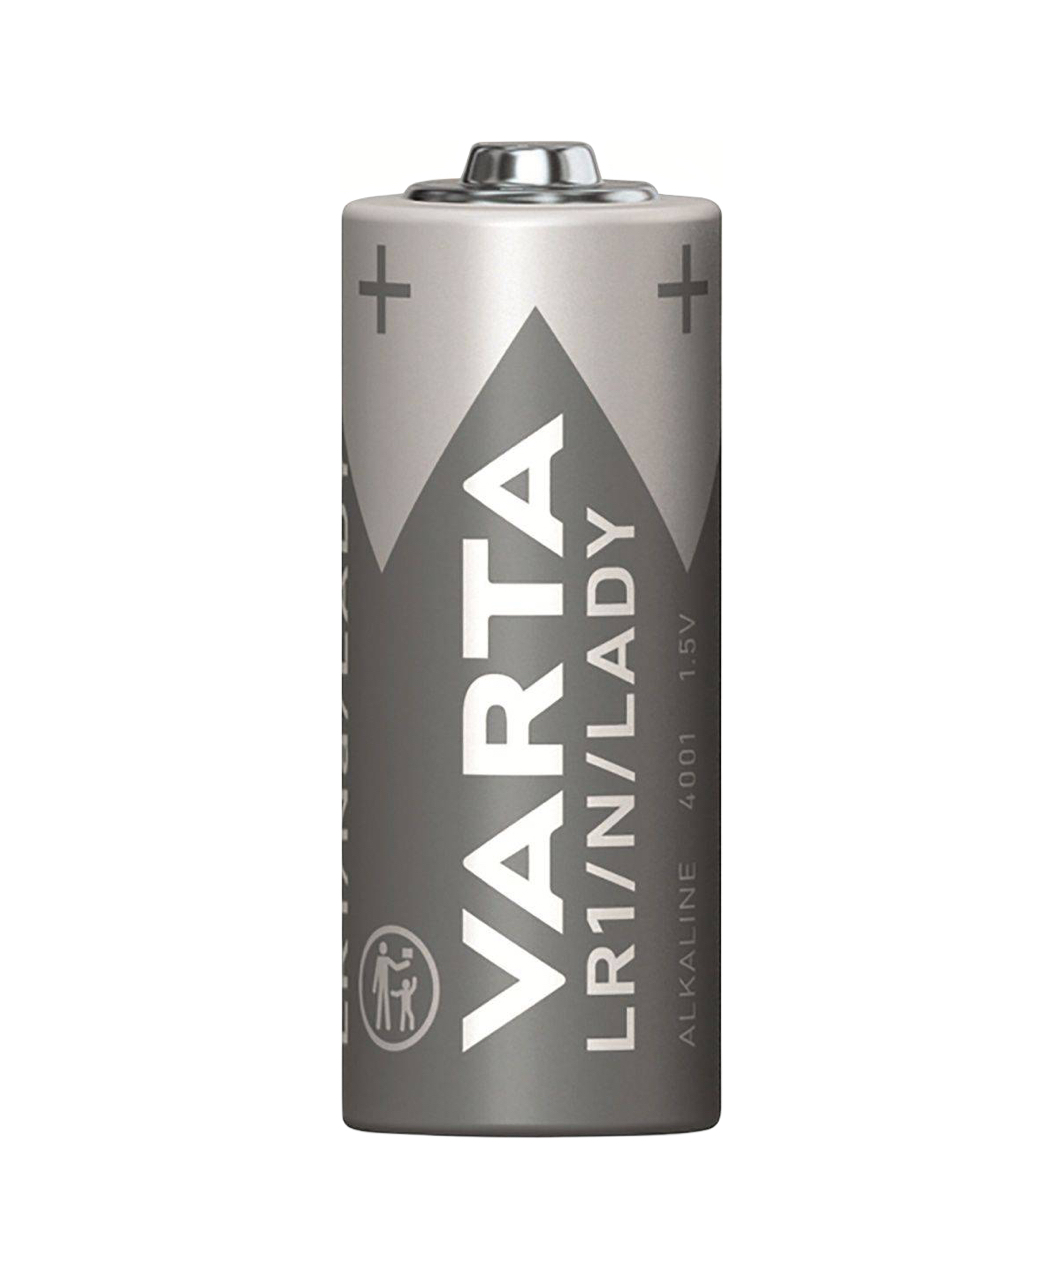 VARTA LR1/N baterijos (2 vnt.)